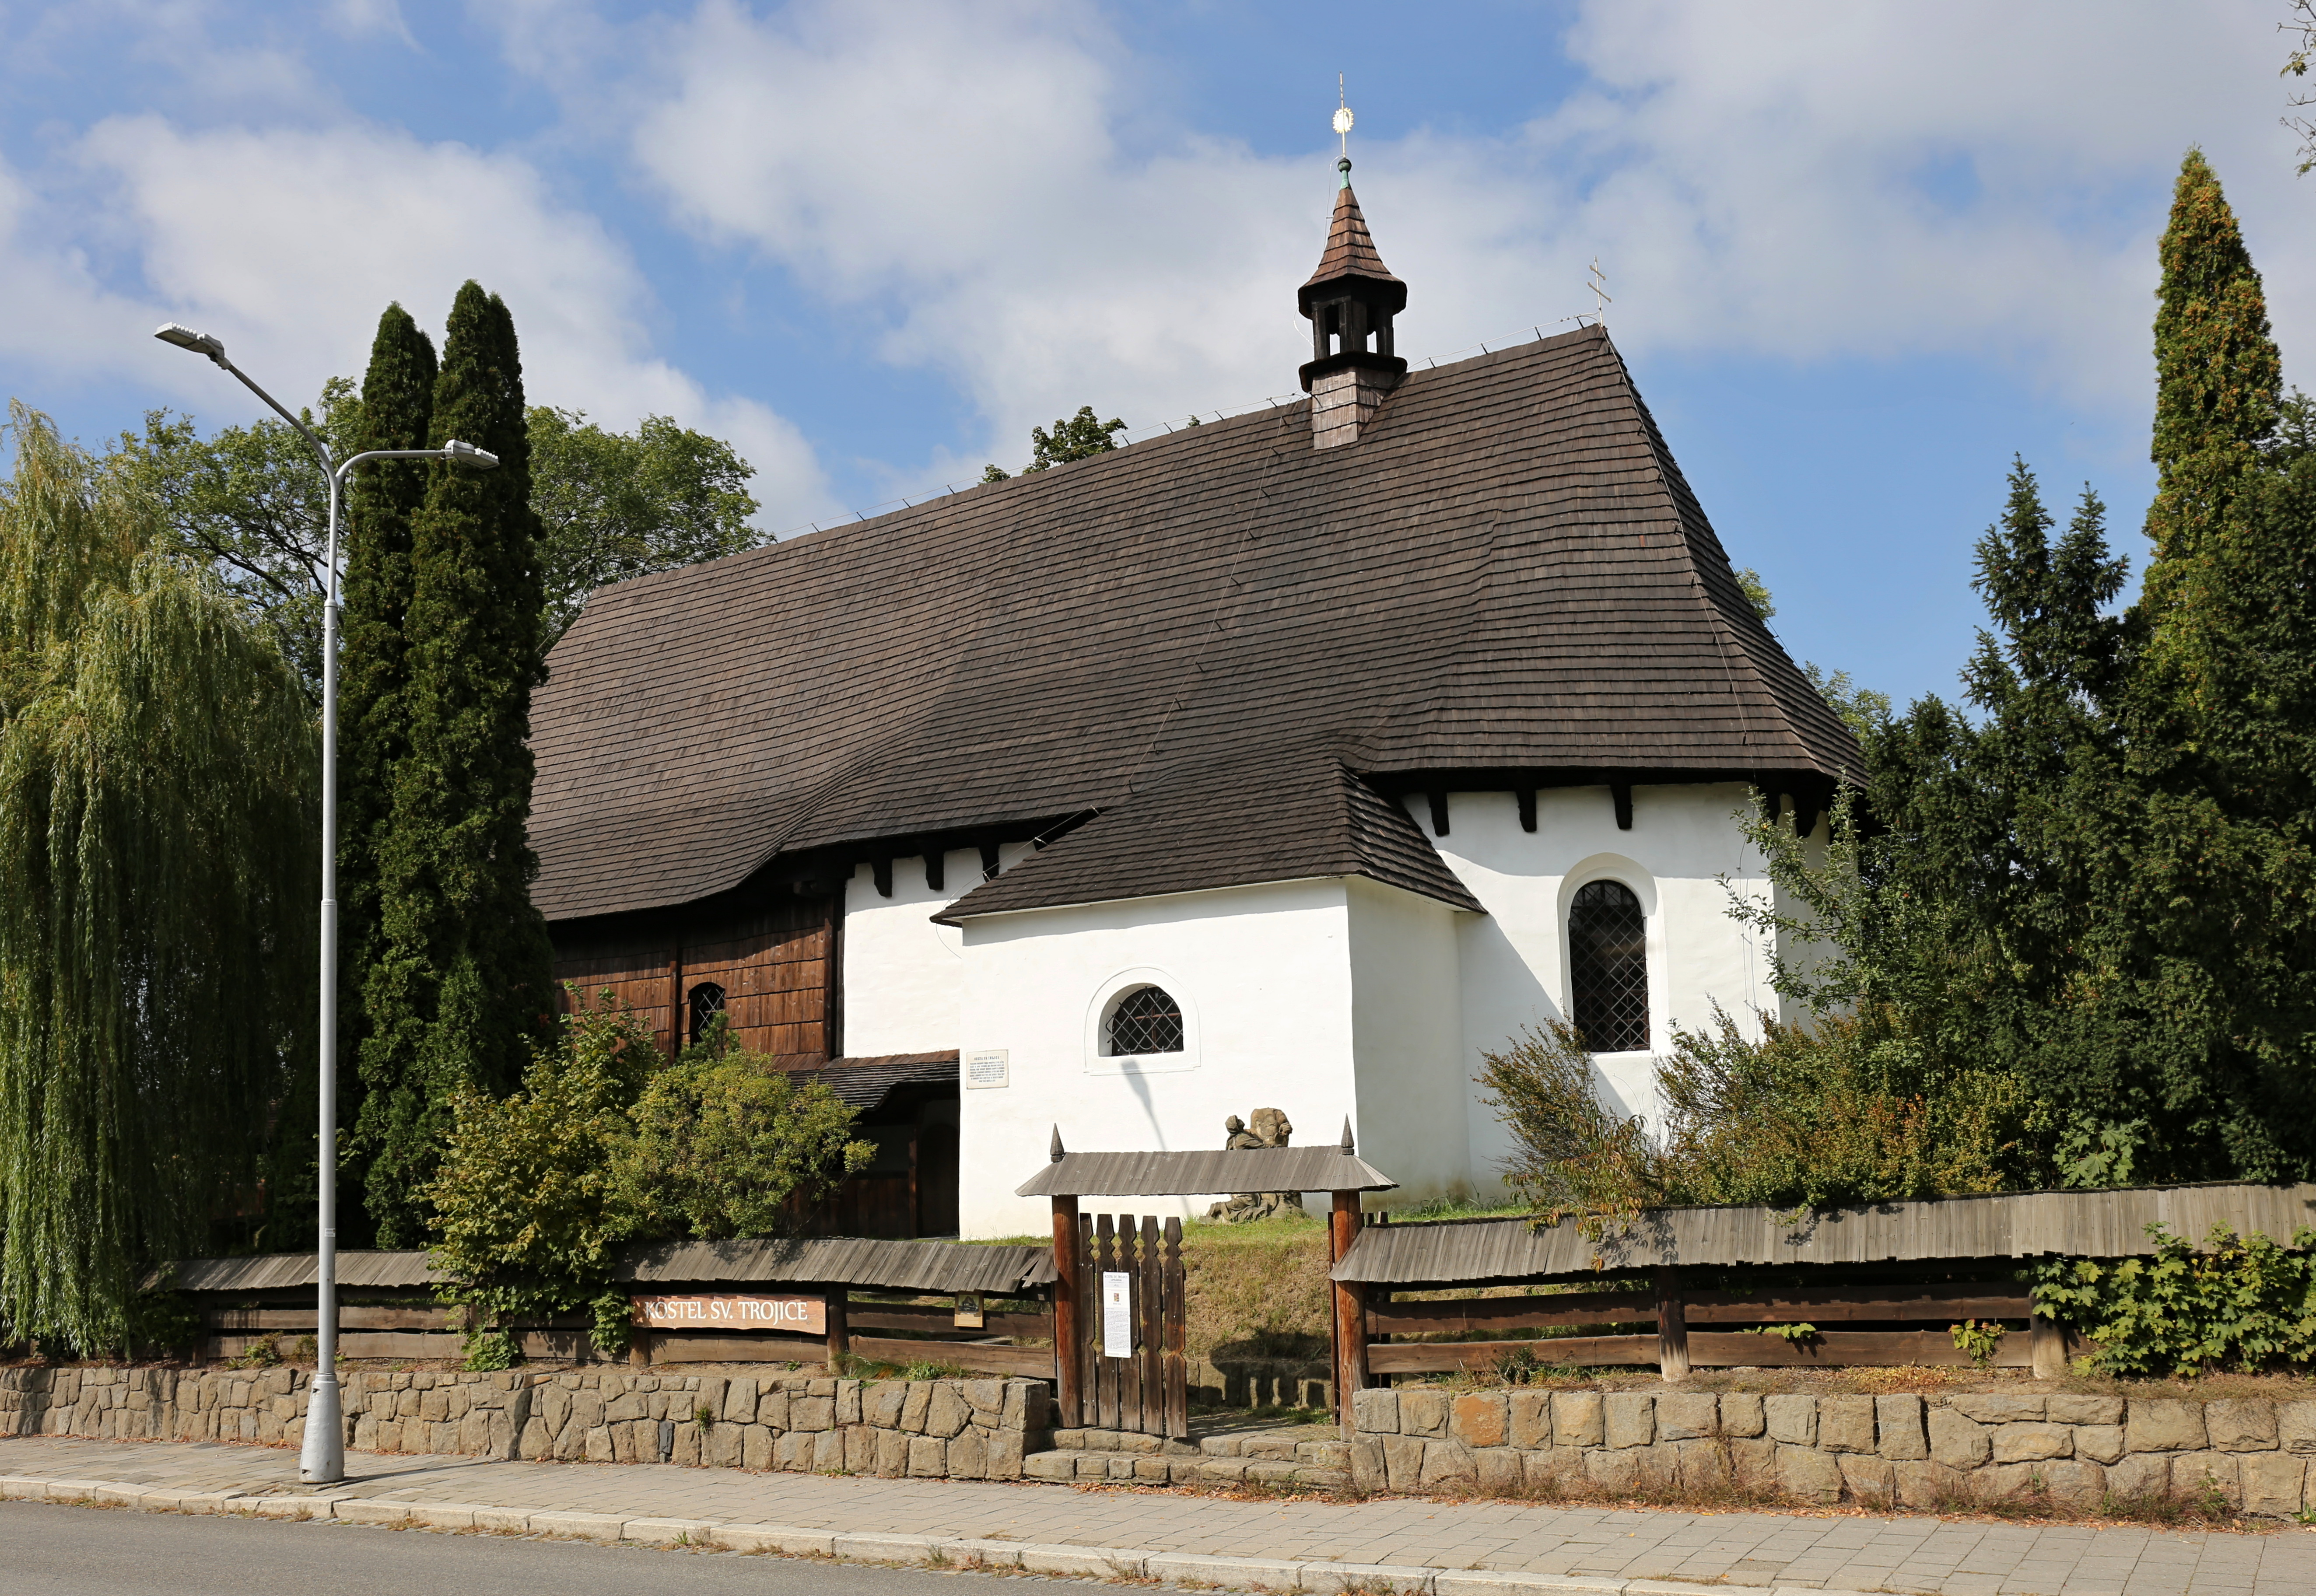 Church of the Holy Trinity in Valašské Meziříčí